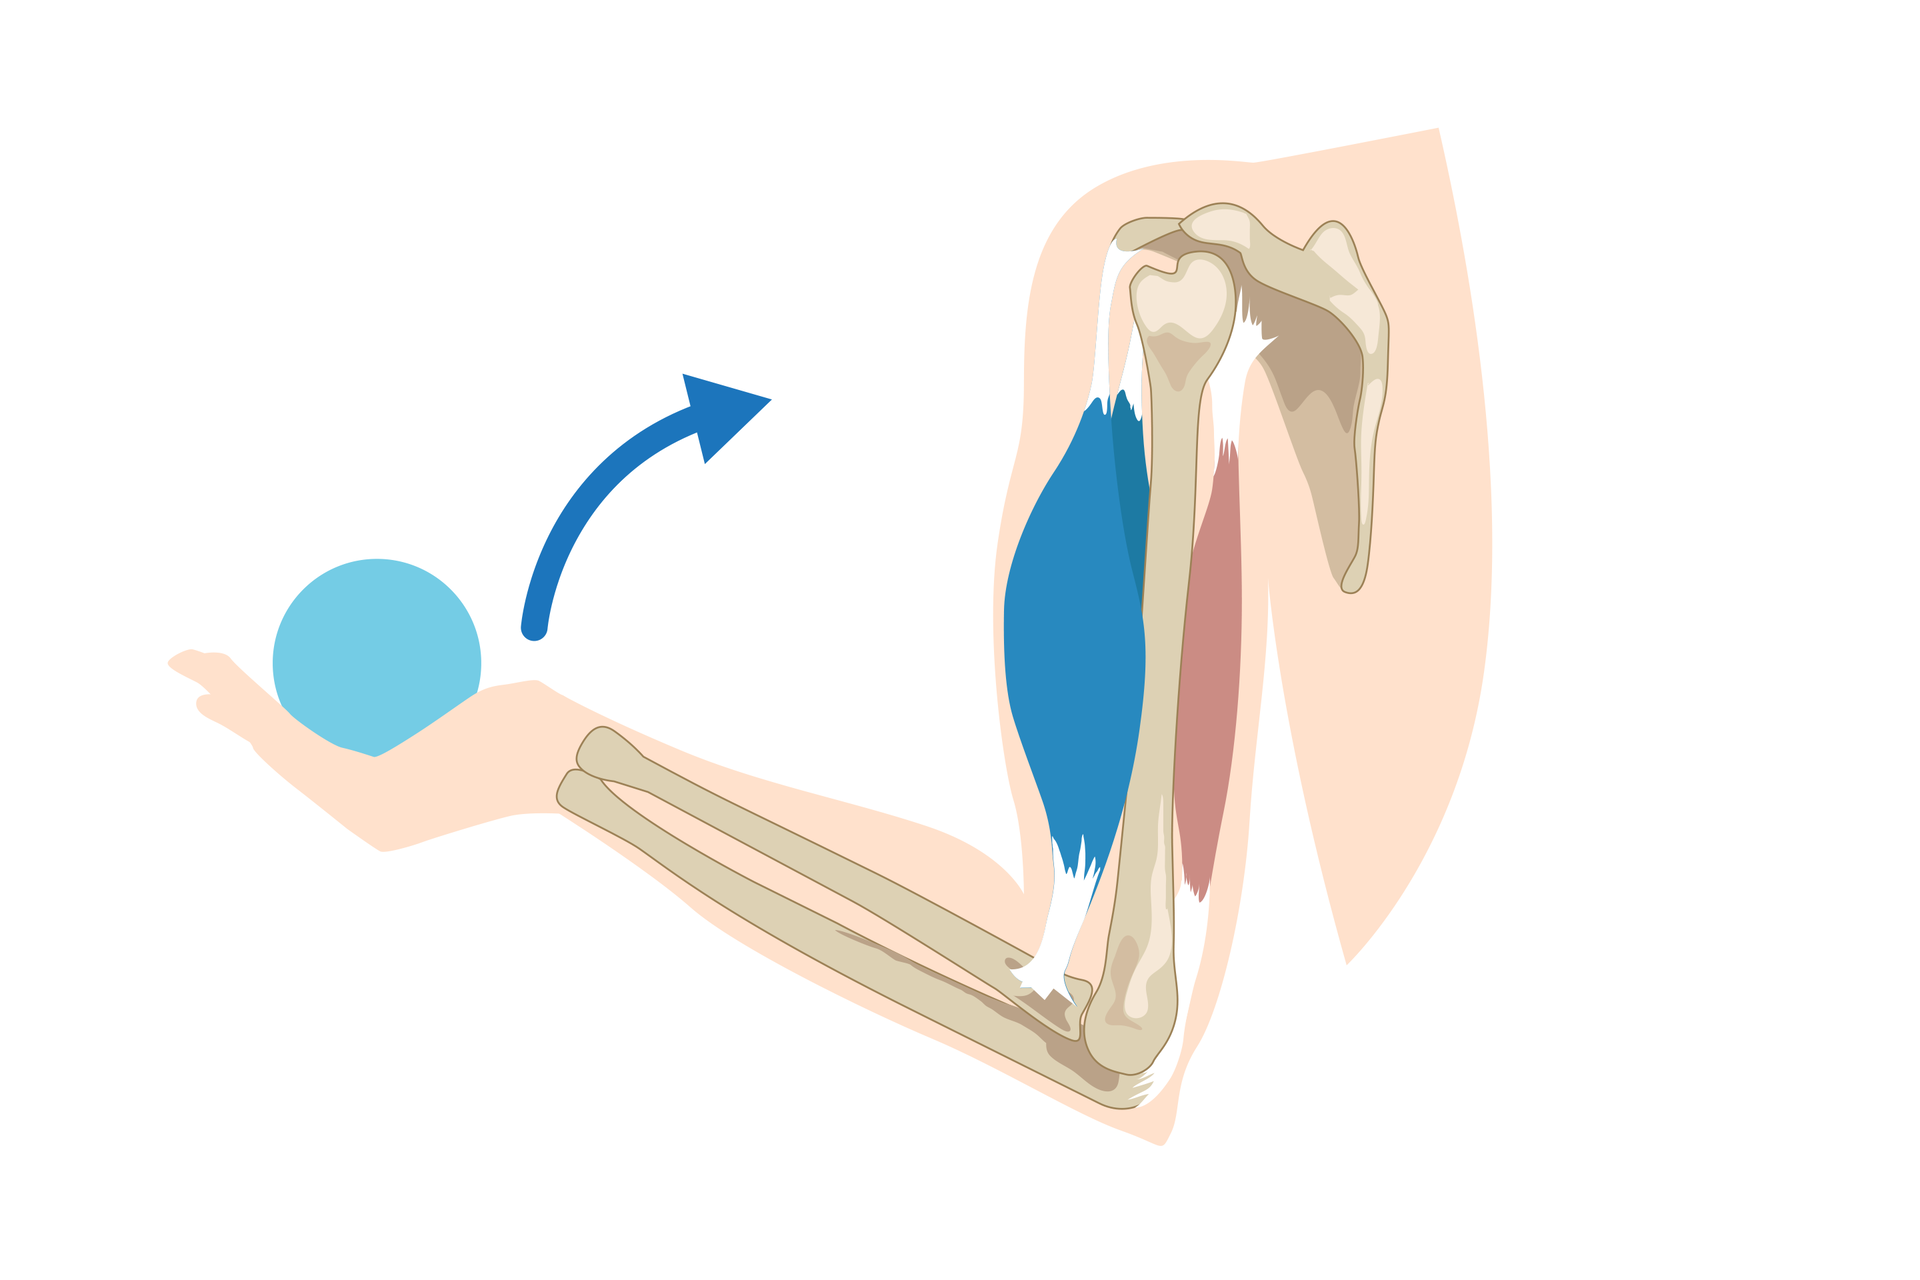 Schemat przedstawiający kończynę górną: widoczna kość ramieniowa i przylegające do niej mięśnie: dwugłowy i trójgłowy, kości przedramienia, kości dłoni, która unosi ciężar i przyciąga do siebie.